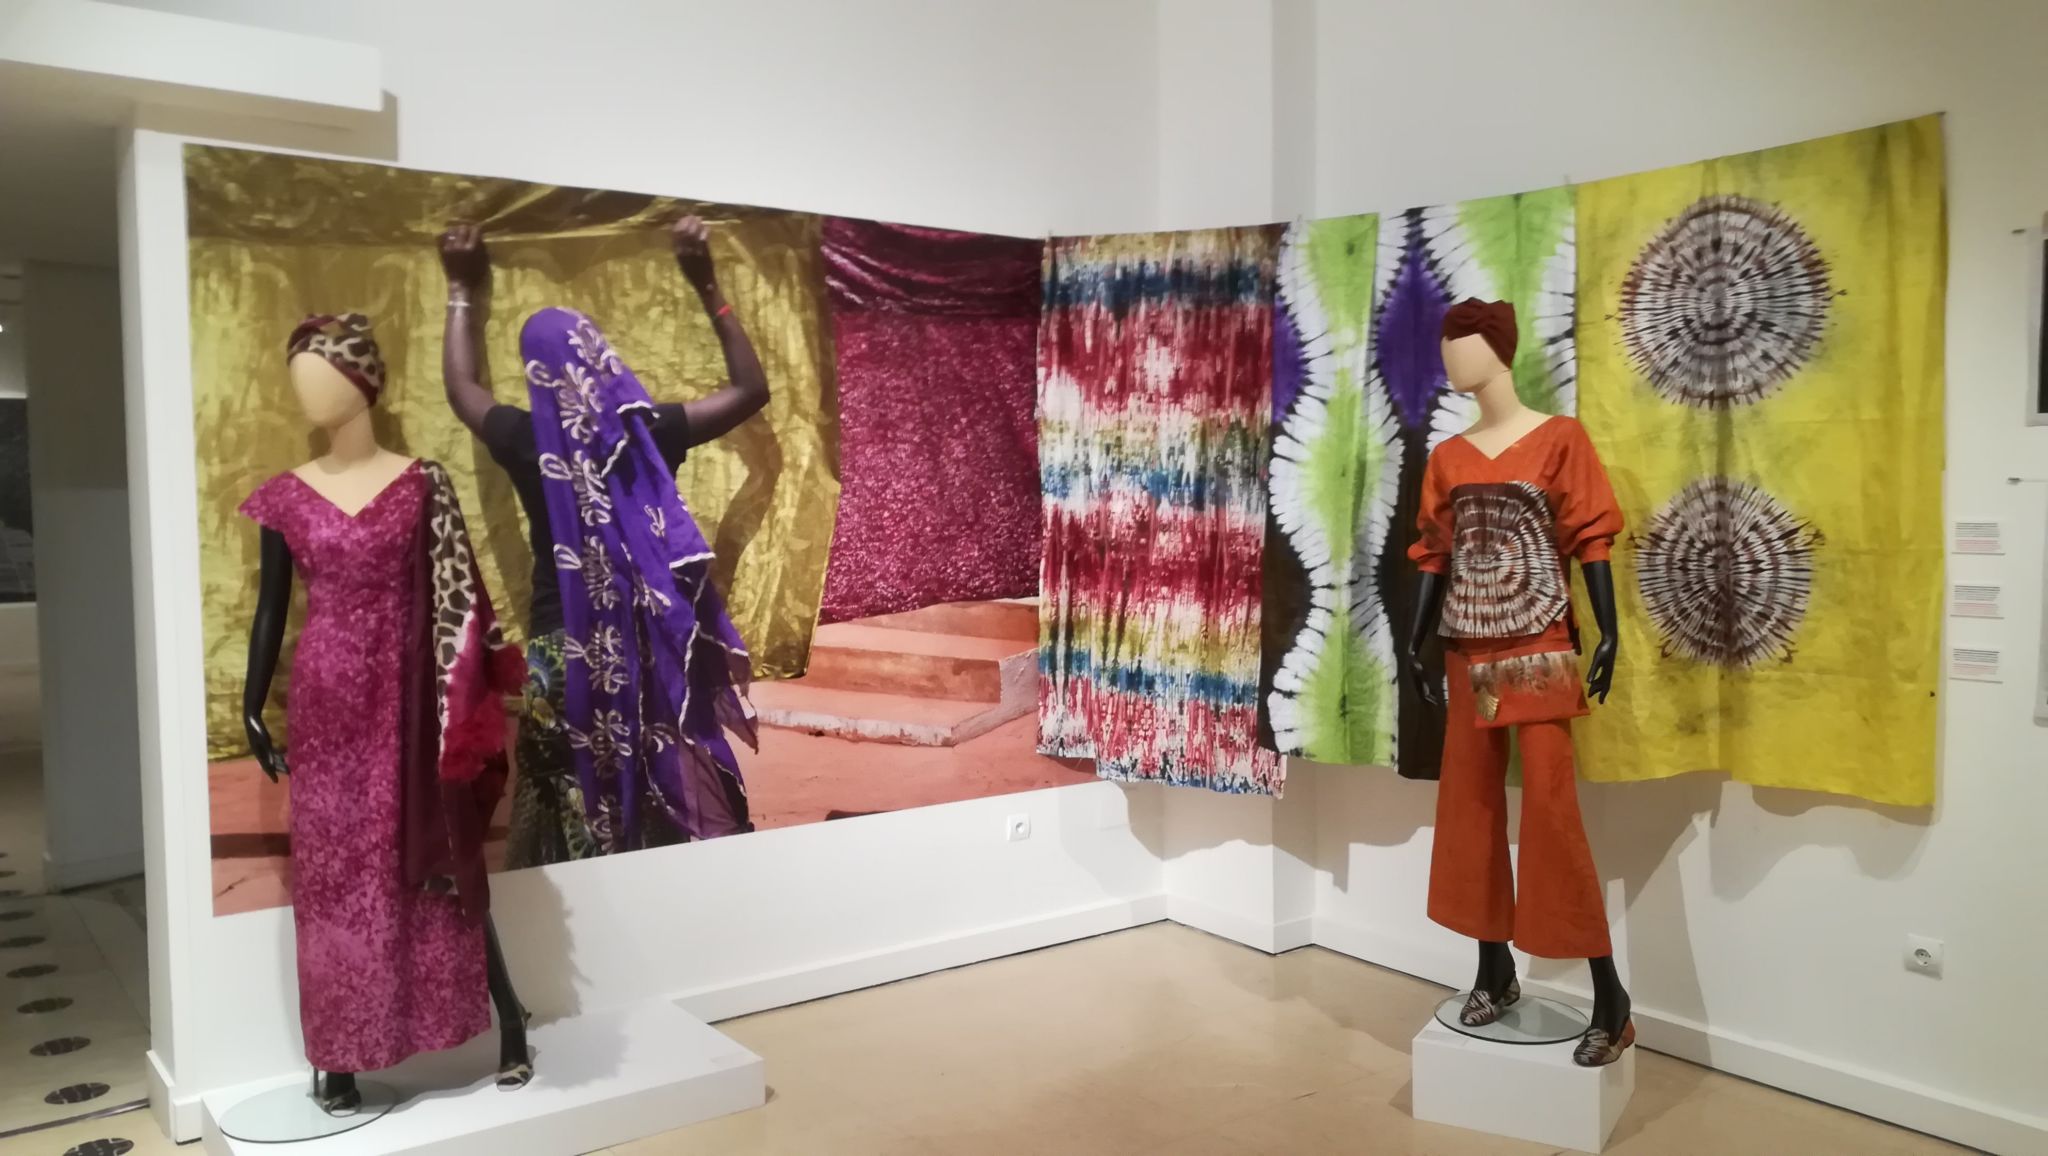 Sala de la exposición “El lenguaje de las telas. Arte textil en África Occidental, Ghana, Malí y Costa de Marfil” con fotografías de Kim Manresa y tejidos batik y otras técnicas.